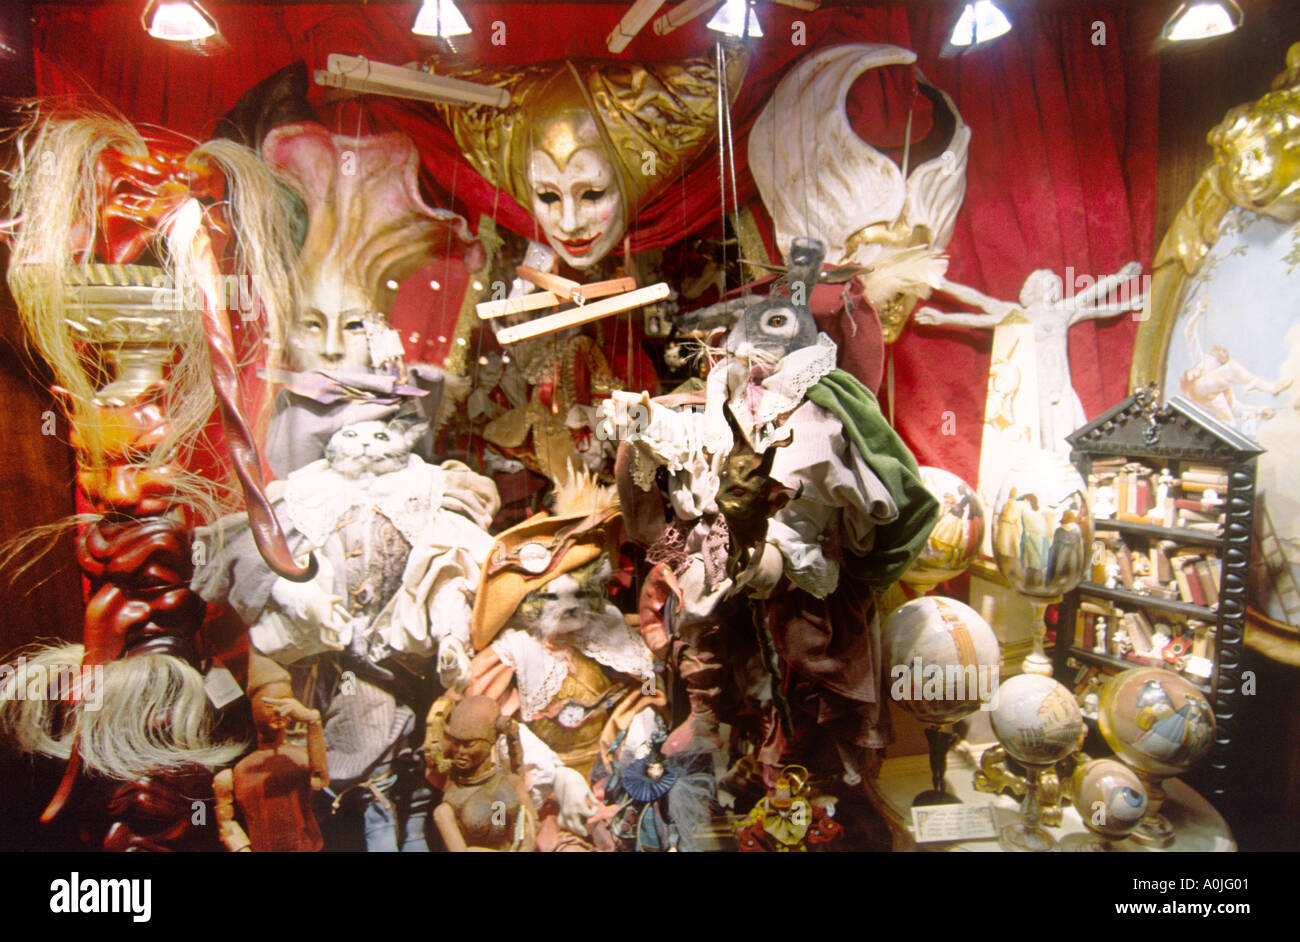 Italy Venice carnival masks shop Stock Photo